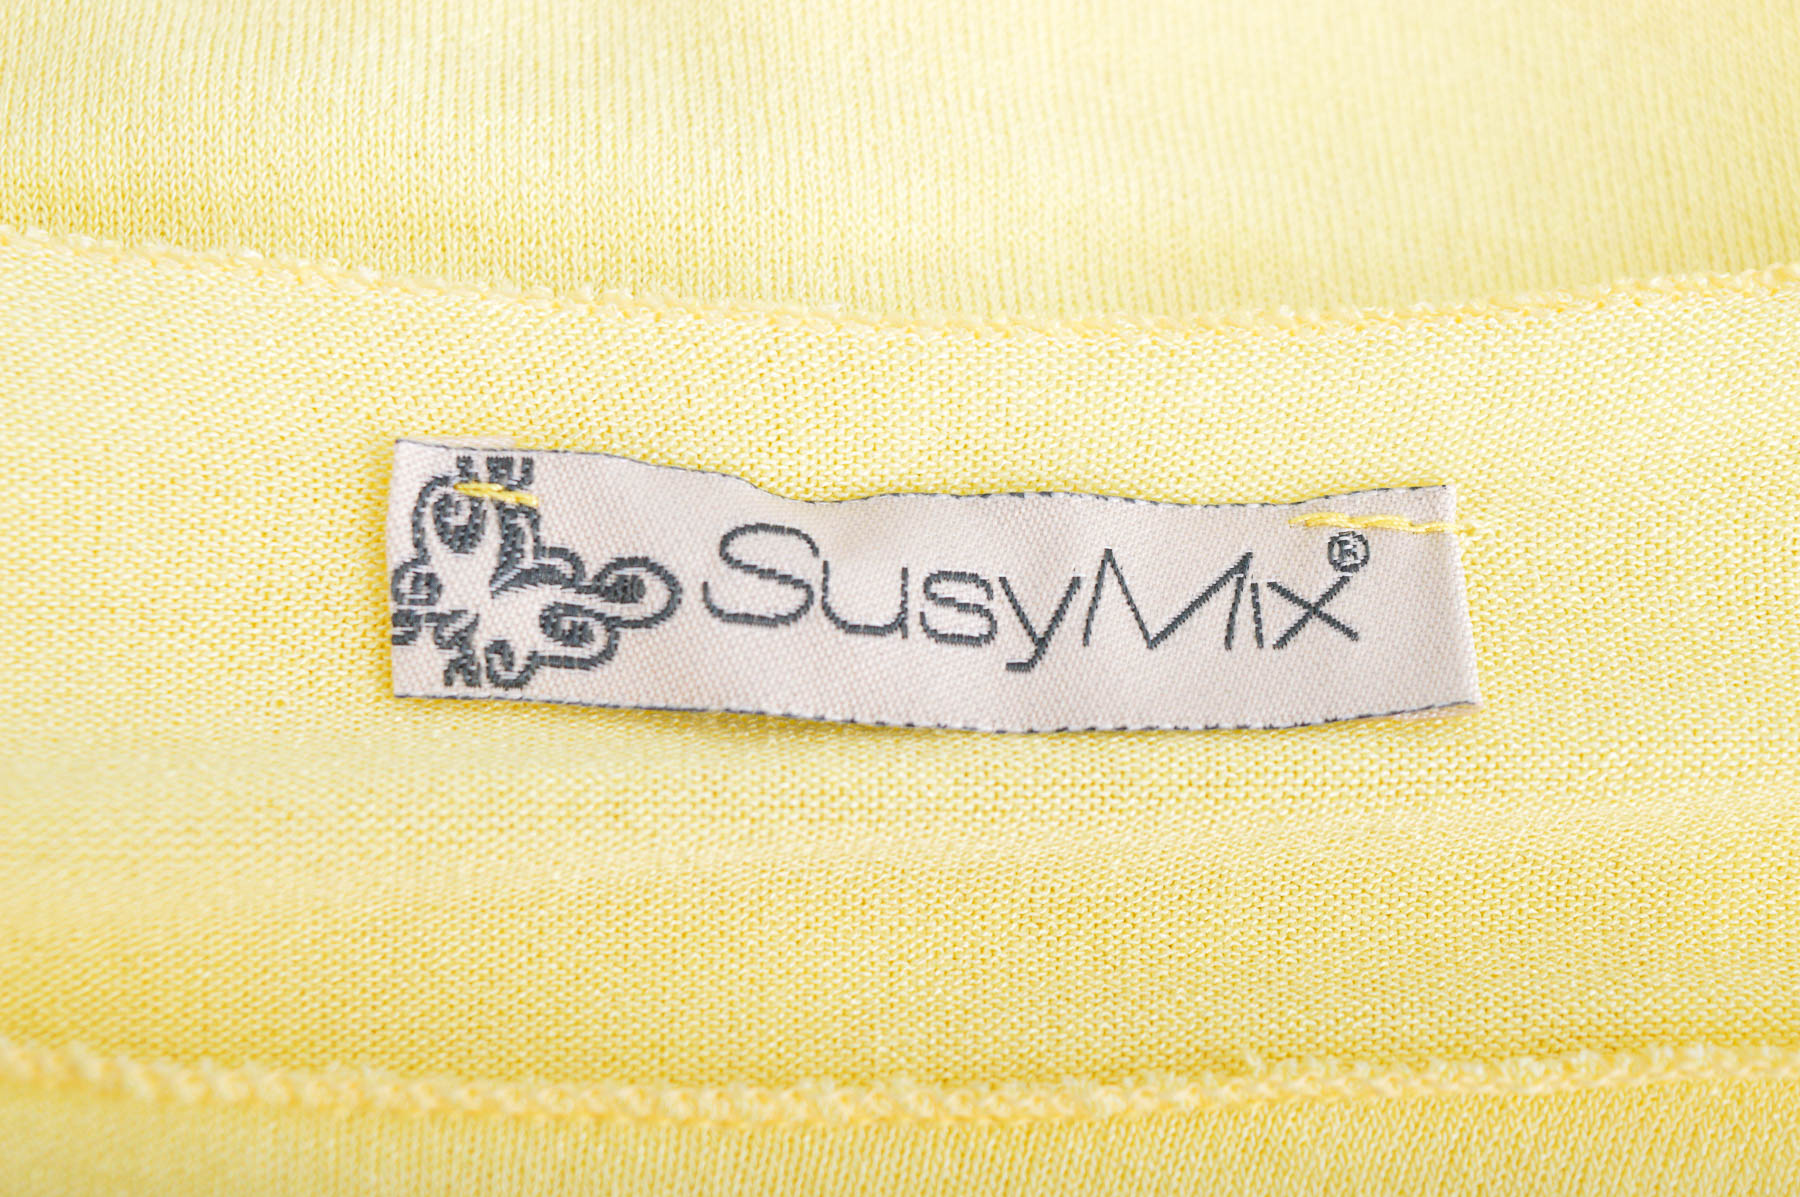 Bluza de damă - SusyMix - 2